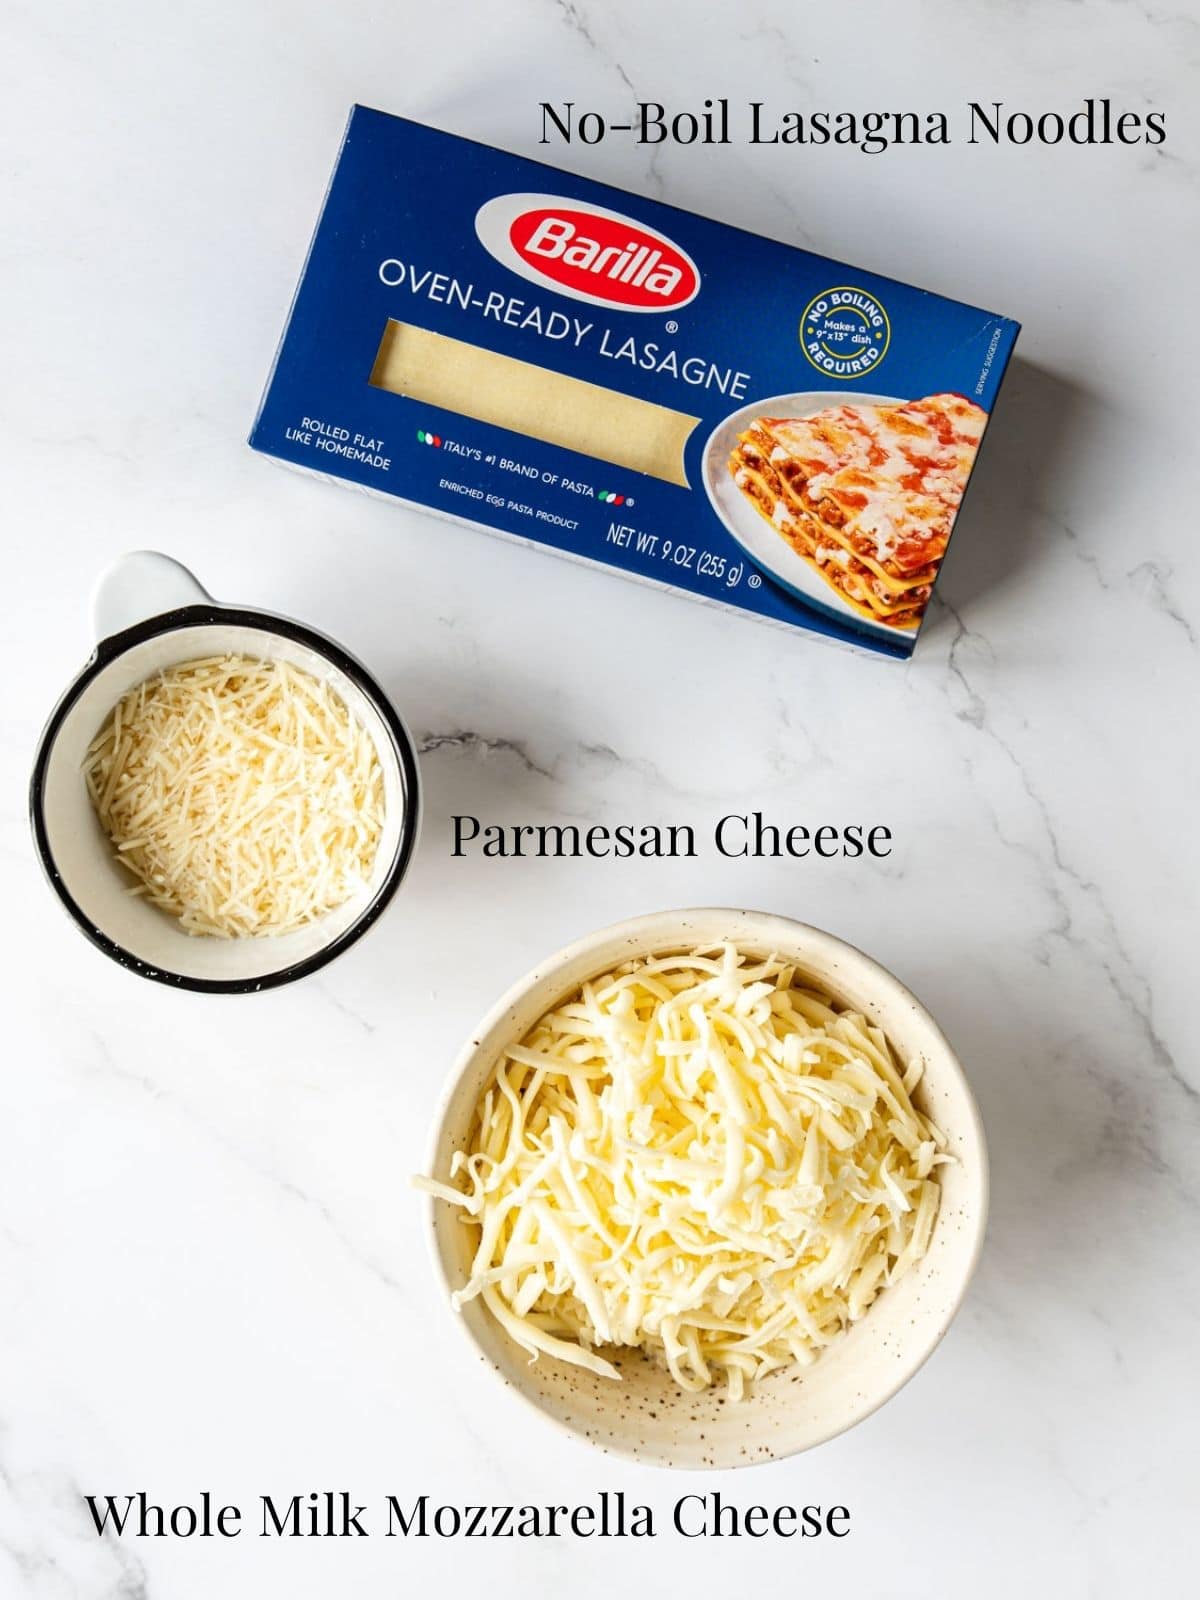 lasagna noodles and cheese to assemble lasagna